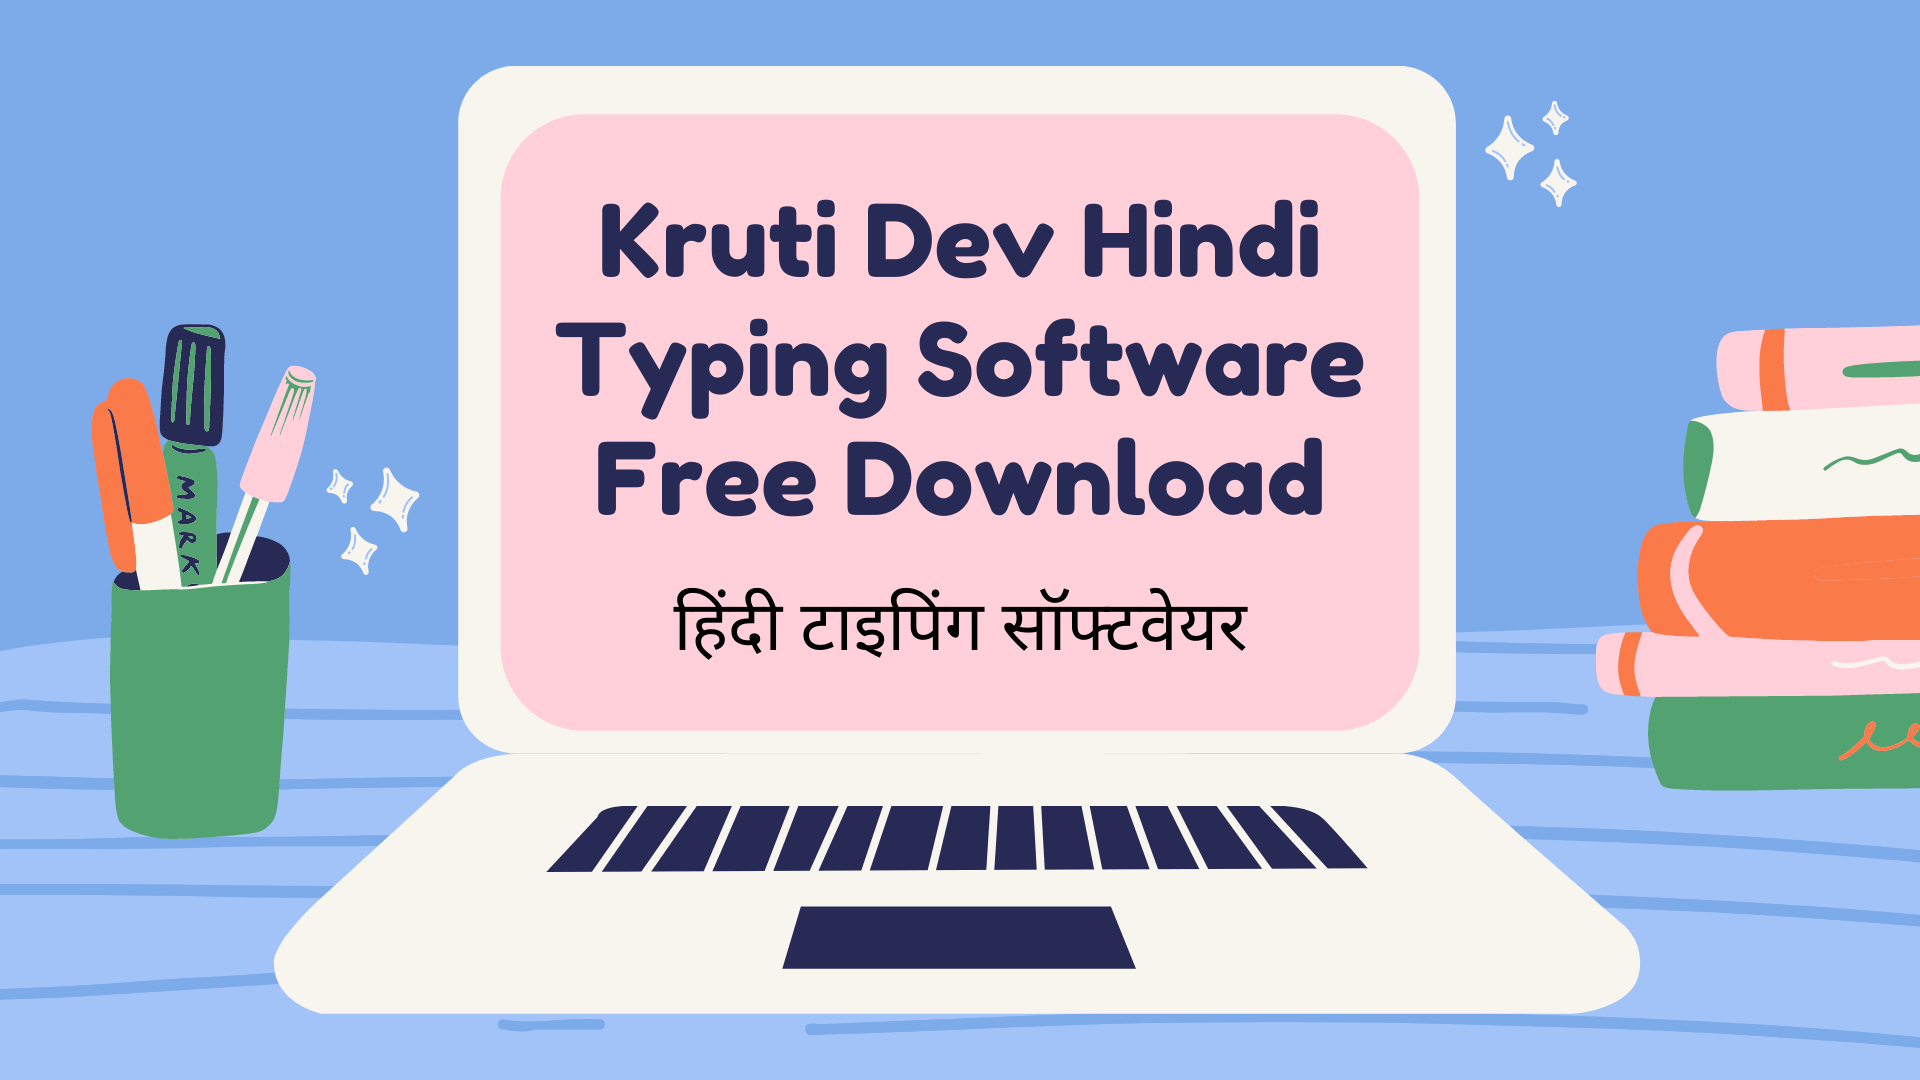 kruti dev hindi typing software free download